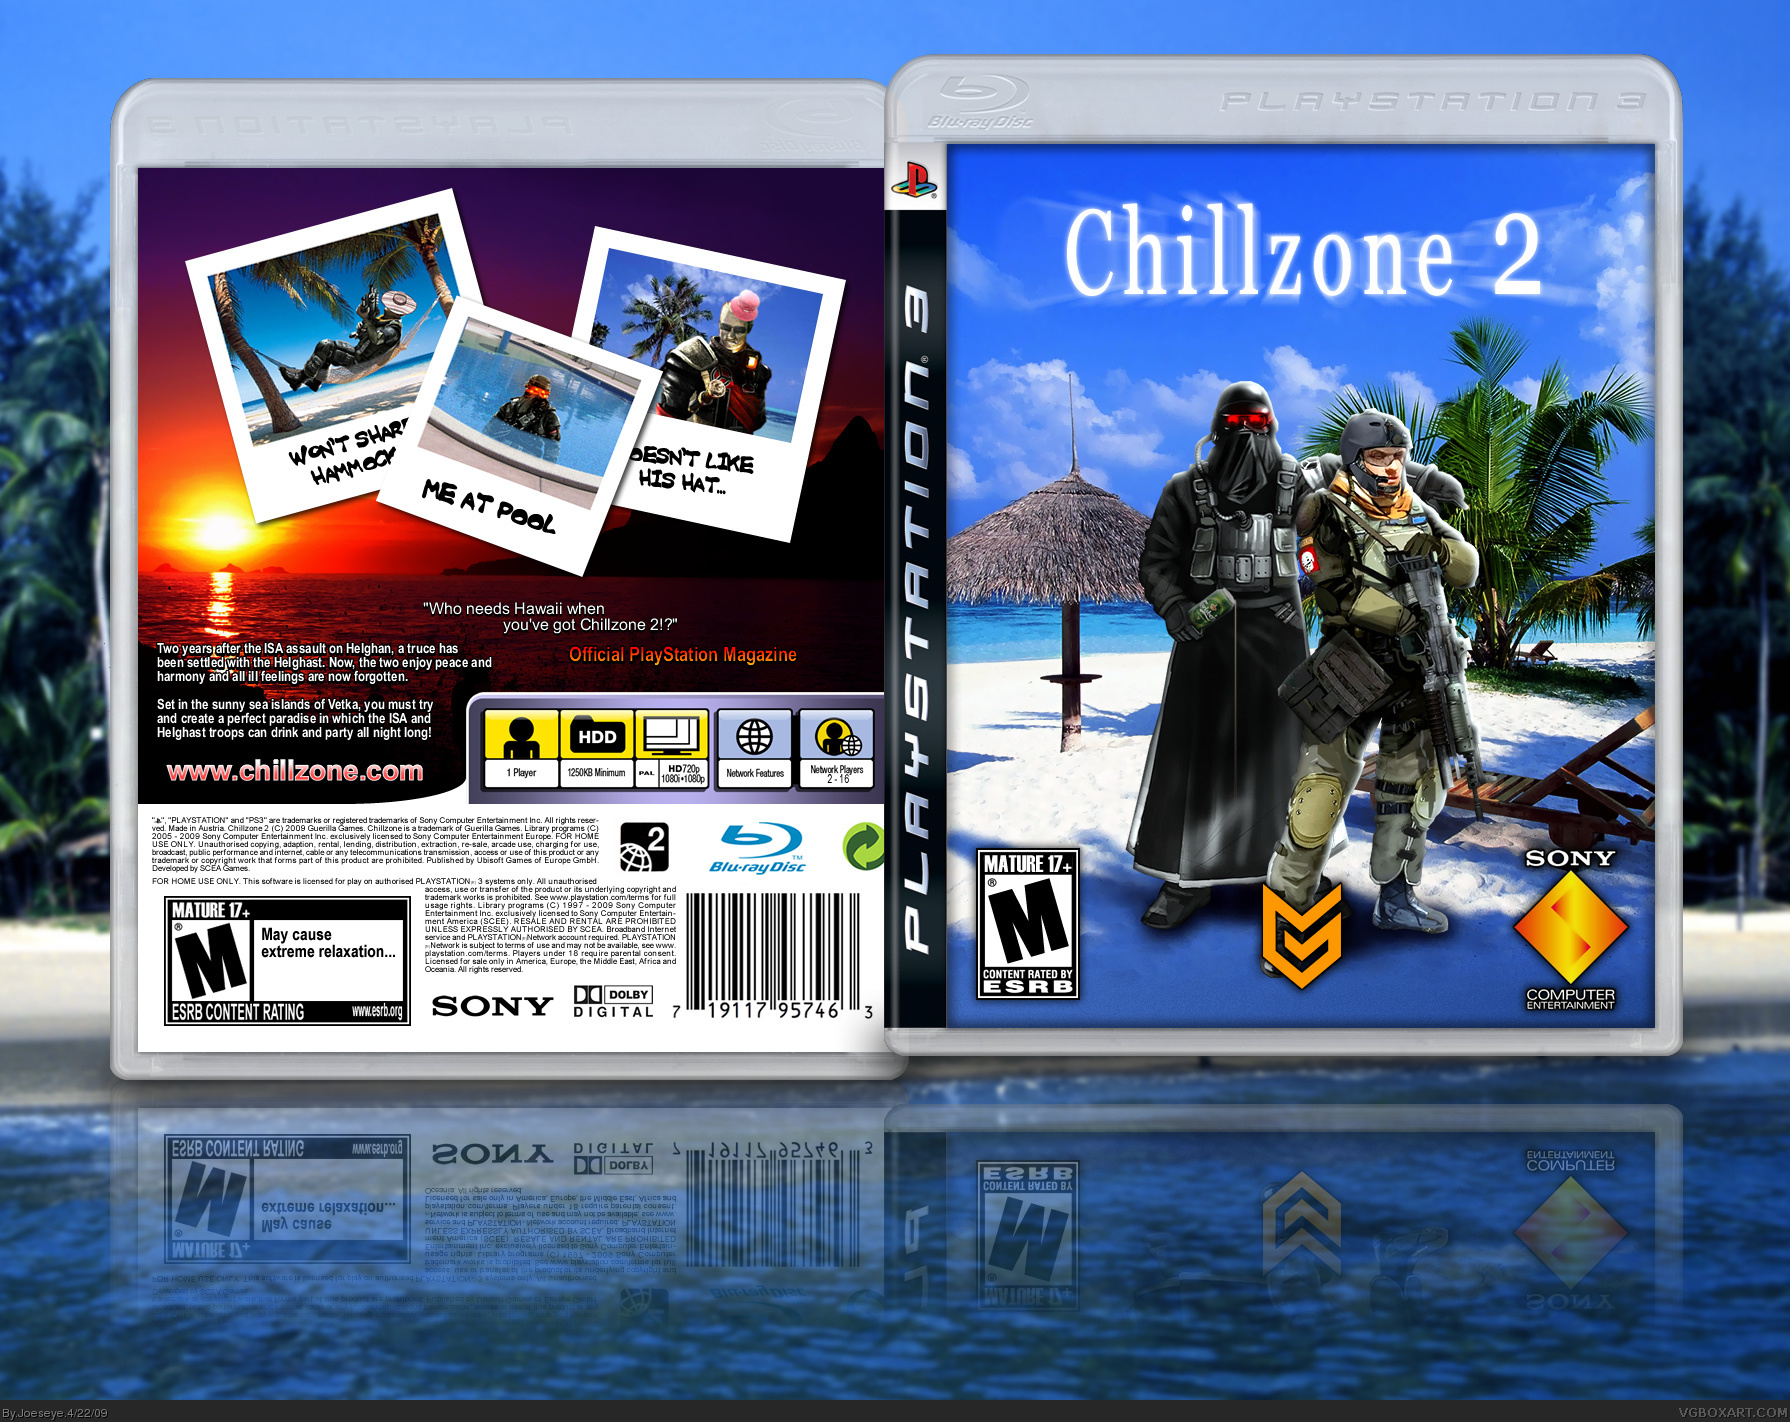 Chillzone 2 box cover